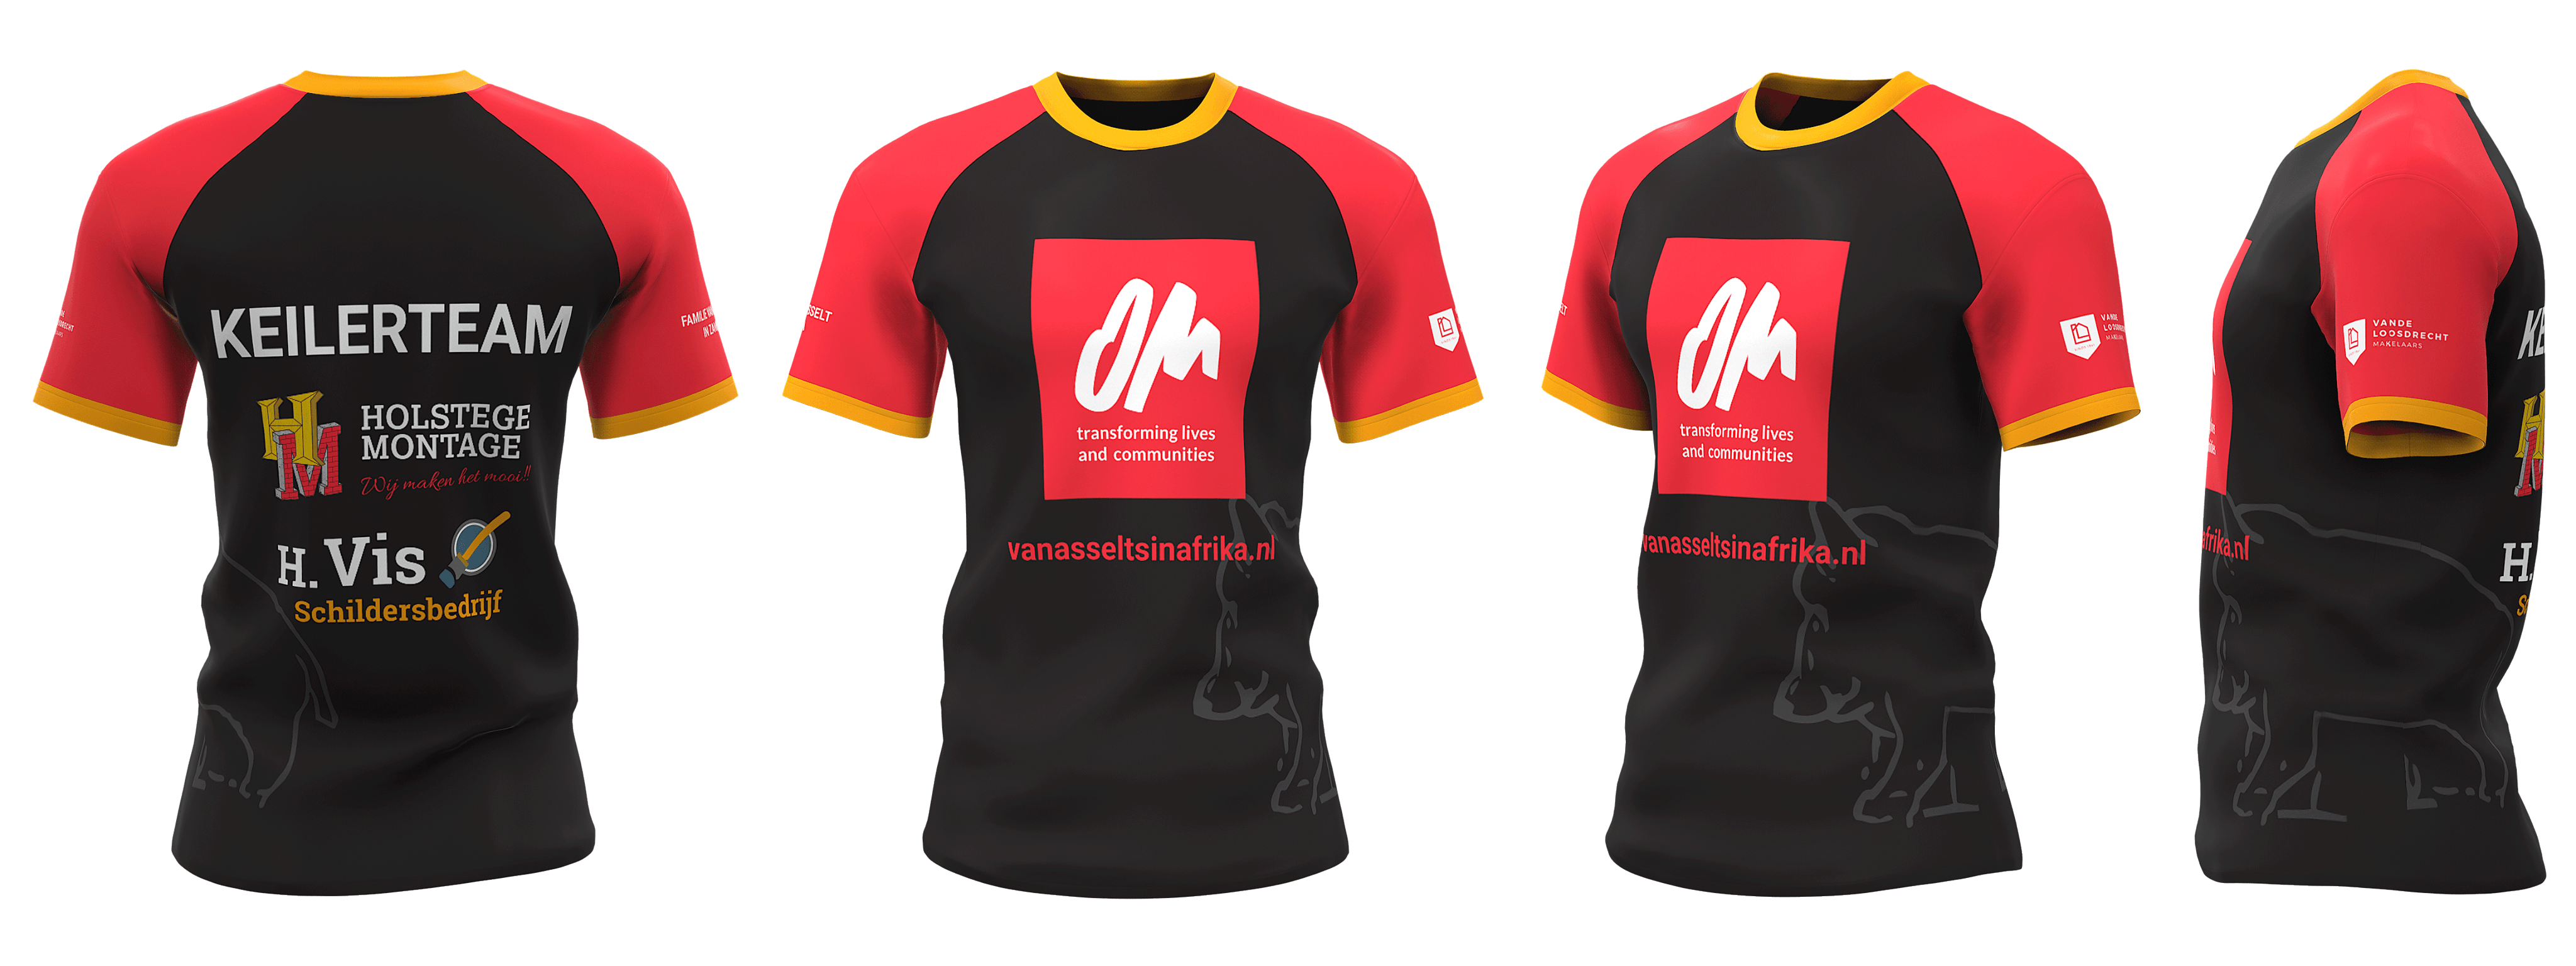 Custom running shirts for teams Keilerteam